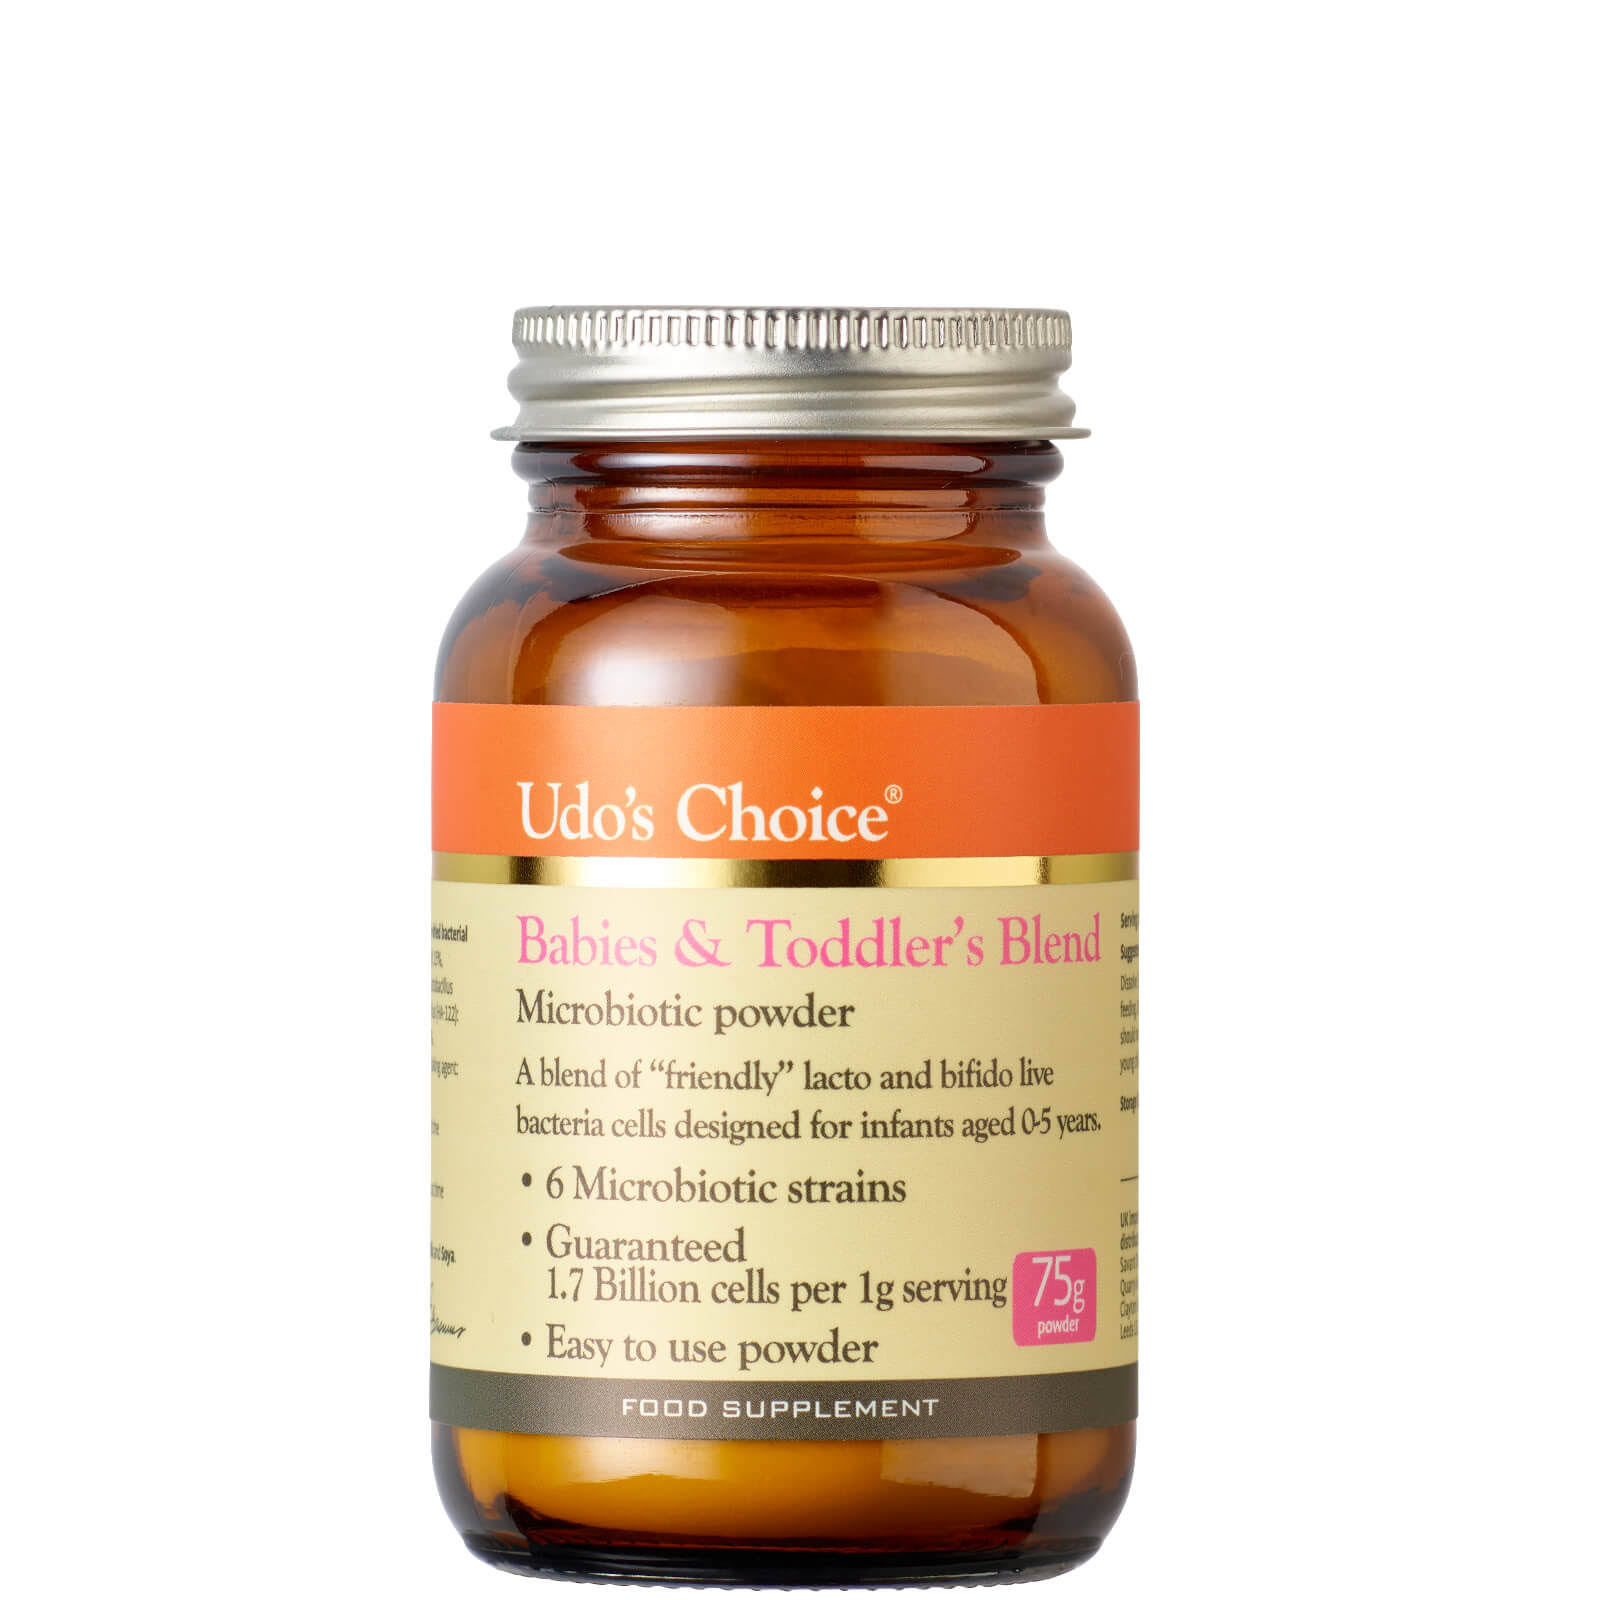 Udo's Choice Infant's Blend Probiotic